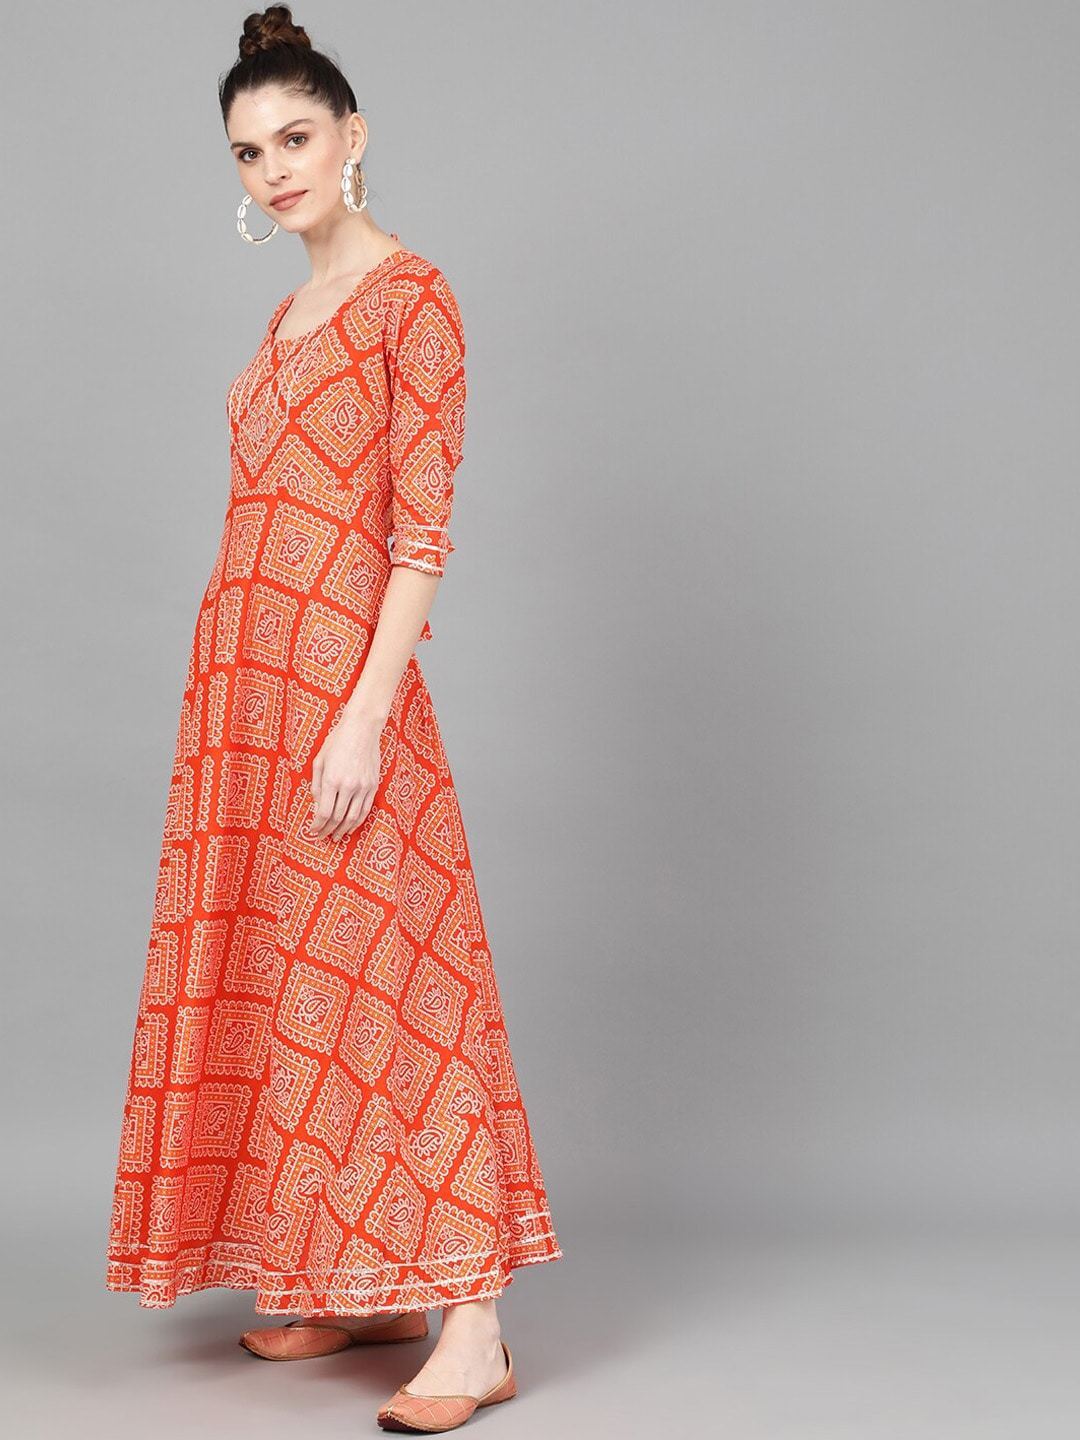 Women's  Orange  Bandhani Printed Maxi Dress - AKS